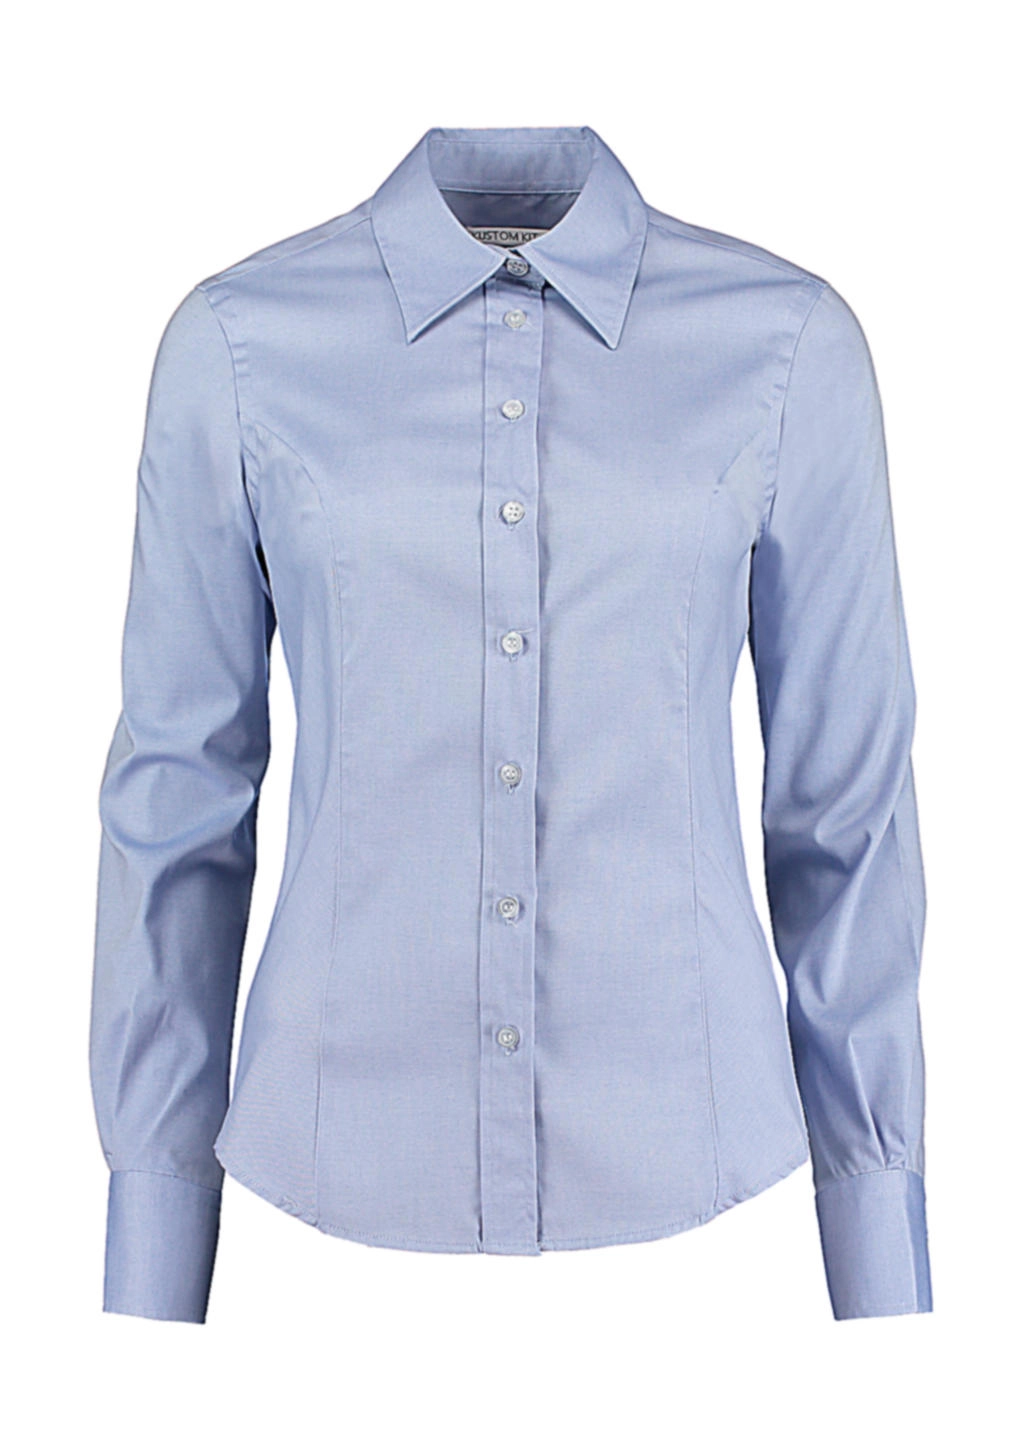 Women`s Tailored Fit Premium Oxford Shirt zum Besticken und Bedrucken in der Farbe Light Blue mit Ihren Logo, Schriftzug oder Motiv.